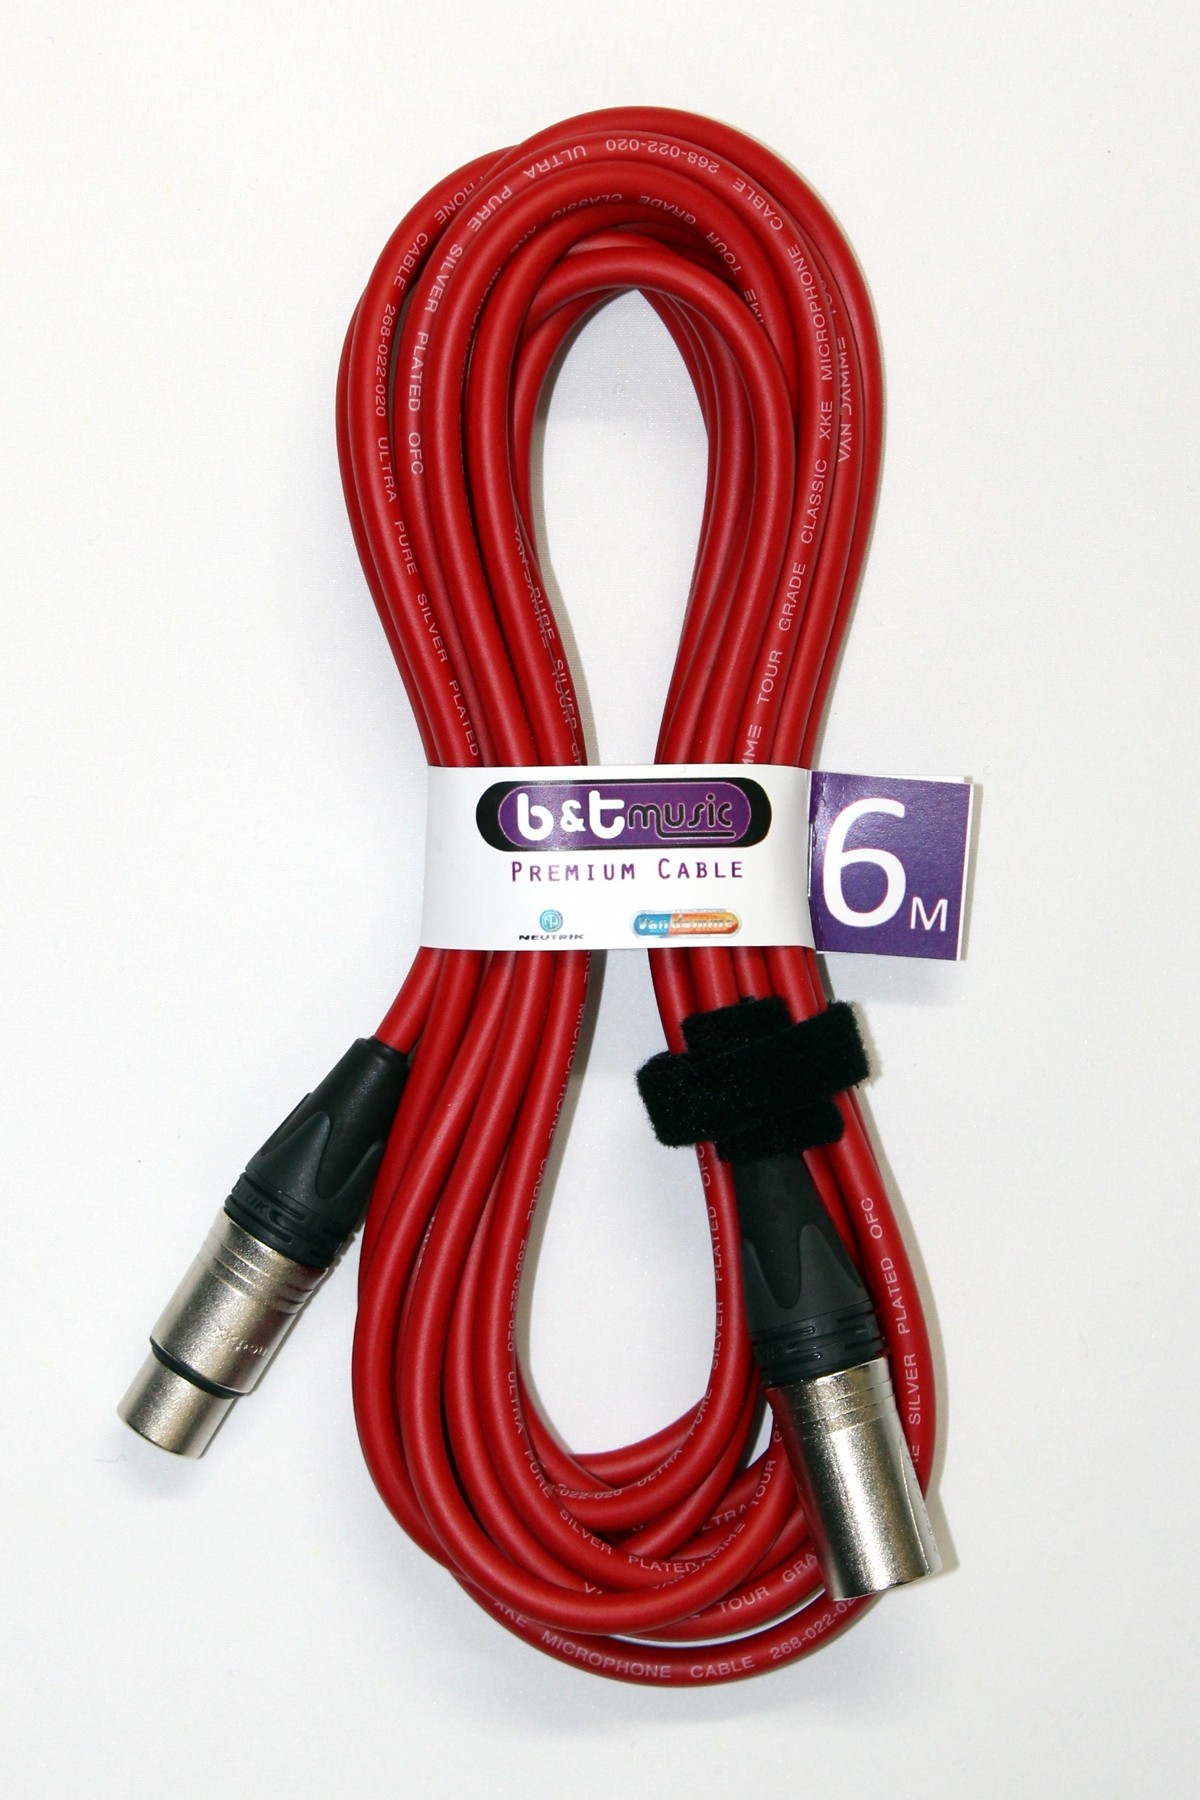 B&T Music Premium Cable 6m XLR To XLR - Red